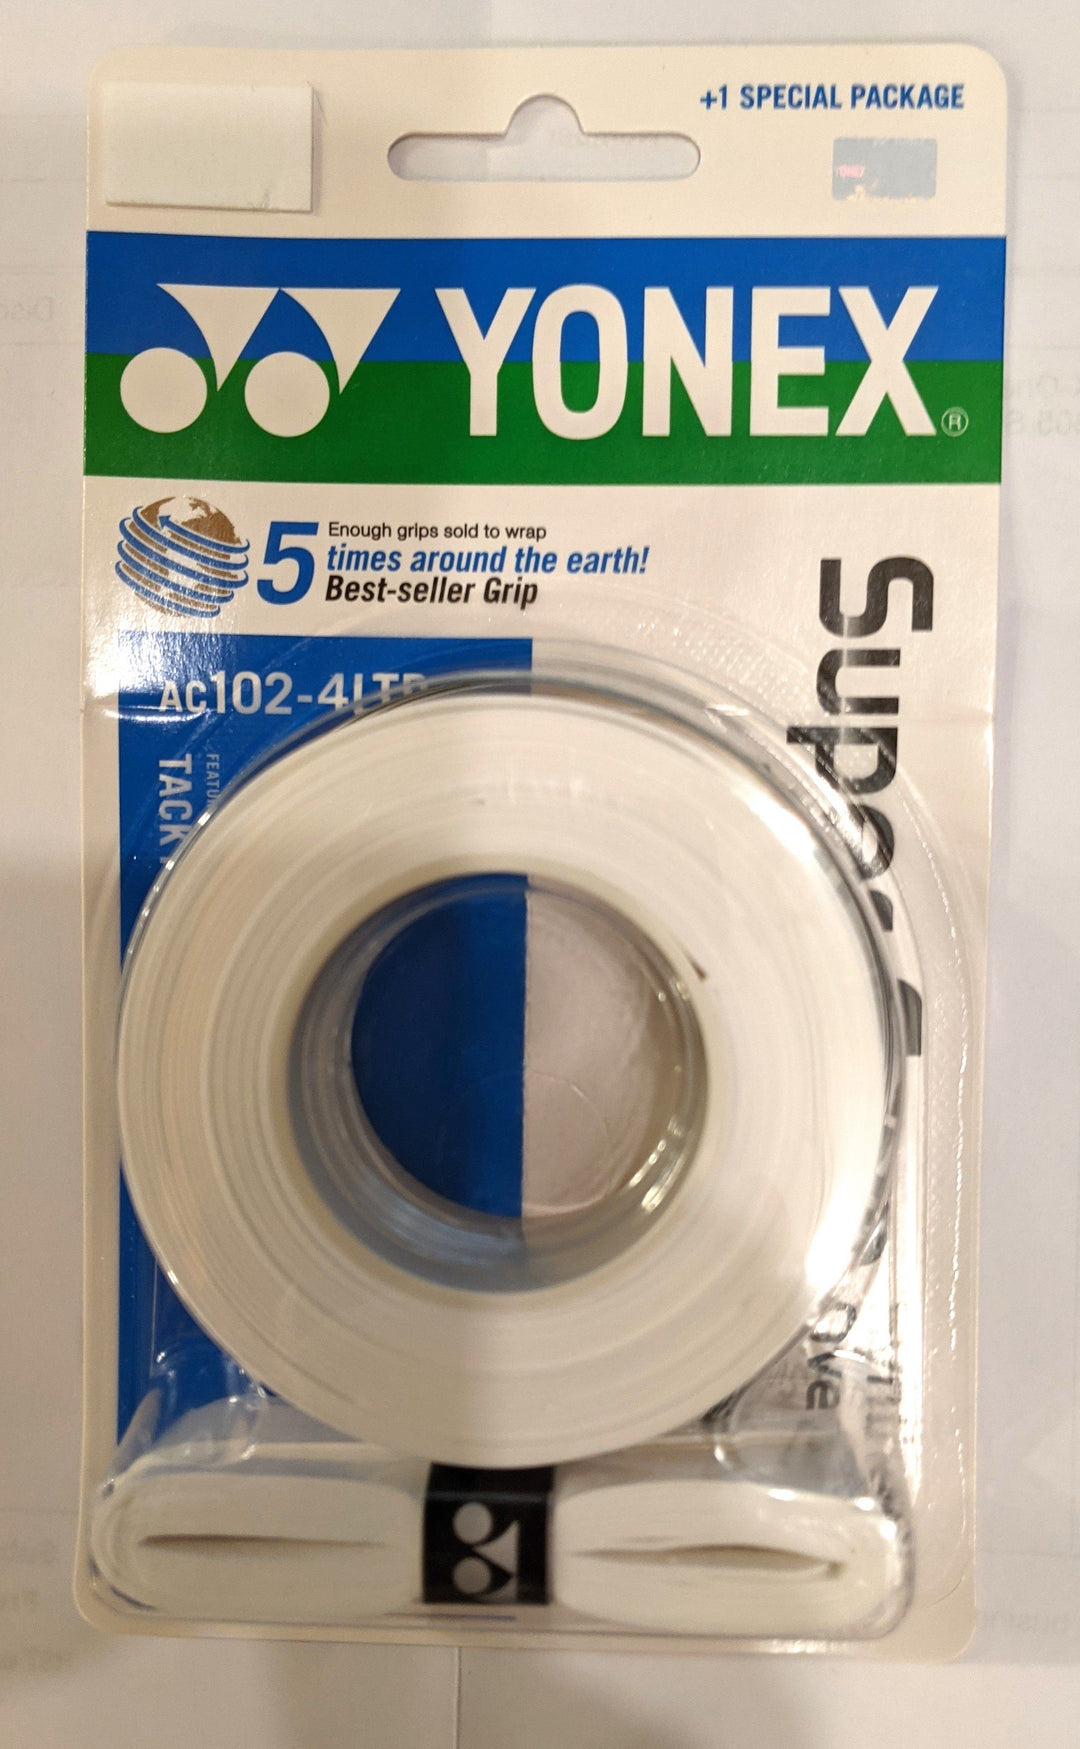 Yonex Super Grap grips AC-102-4LTD 4-pack Grips Yonex White 